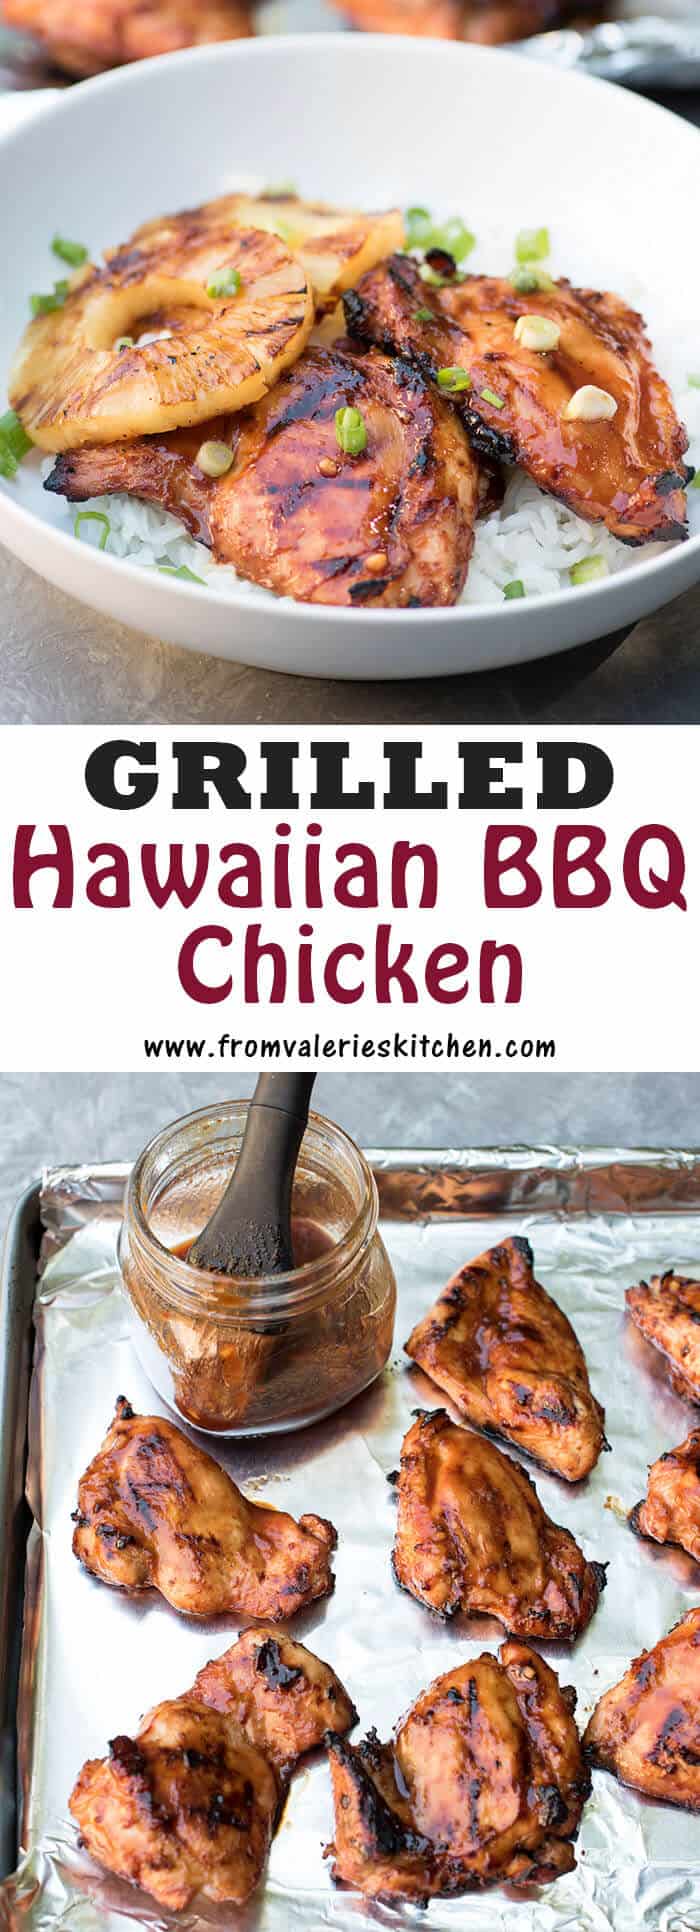 Grilled Hawaiian BBQ Chicken | Valerie's Kitchen